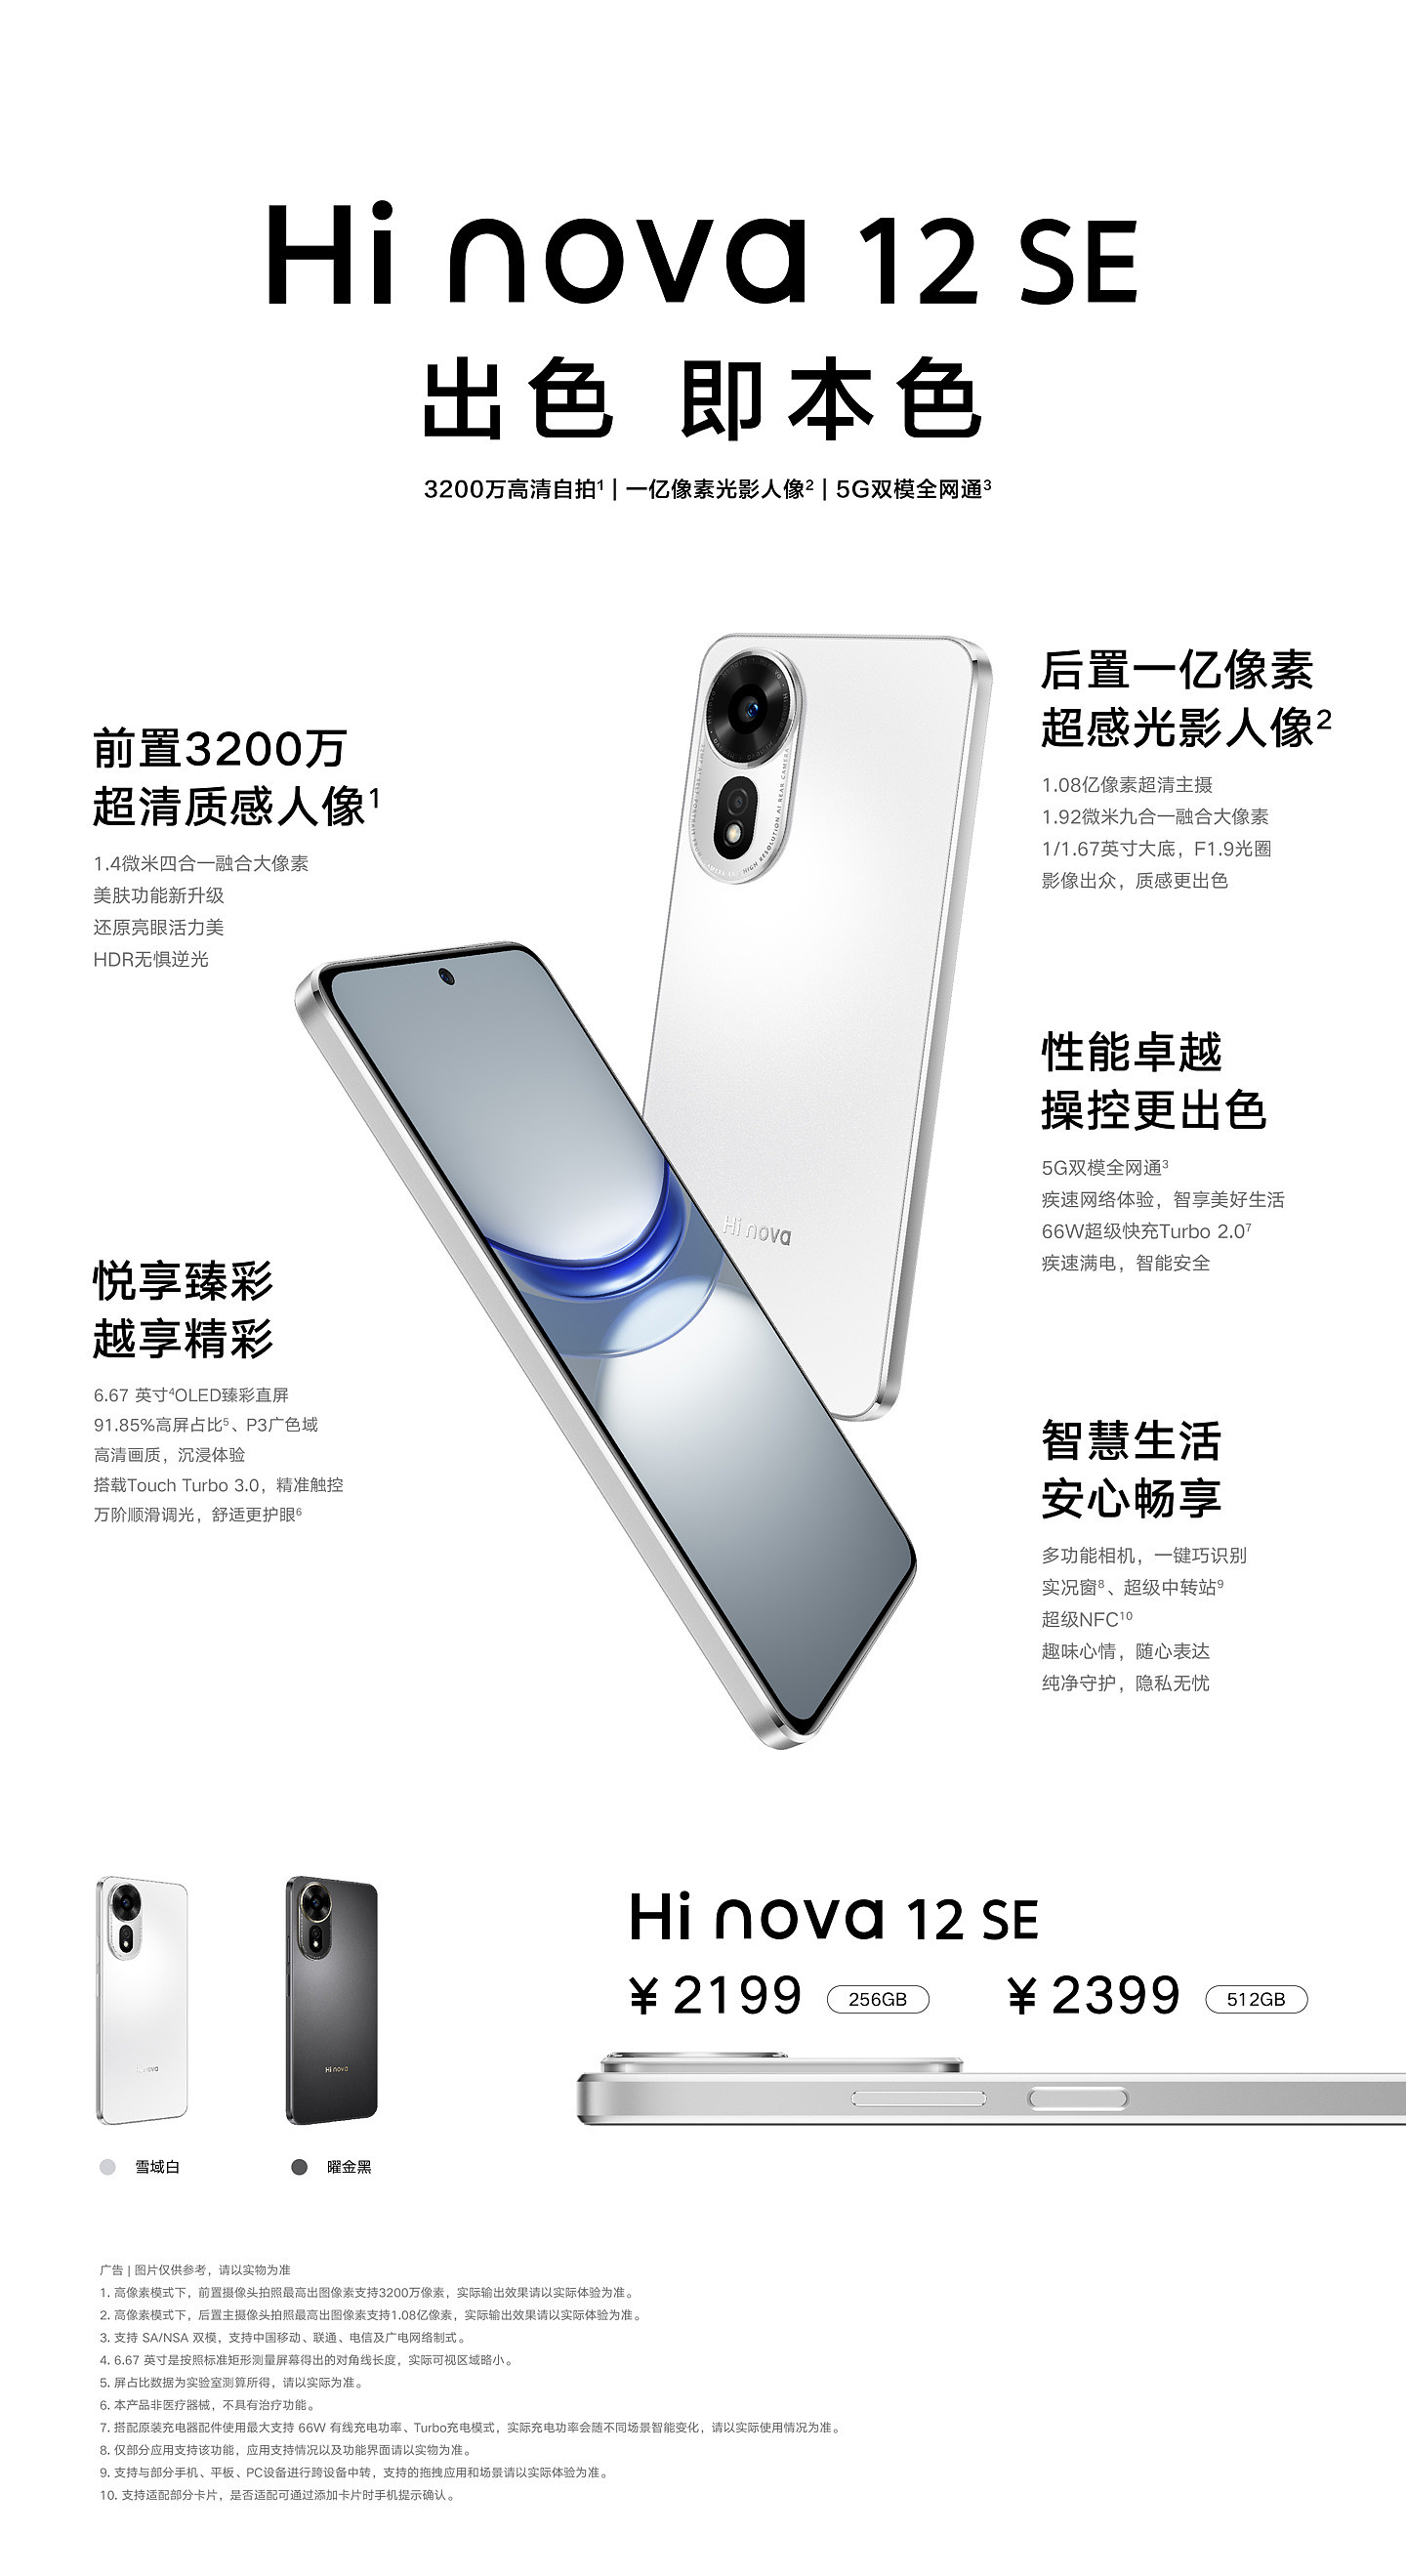 中邮通信 Hi nova 12 SE 手机搭载高通骁龙 695 处理器 - 2